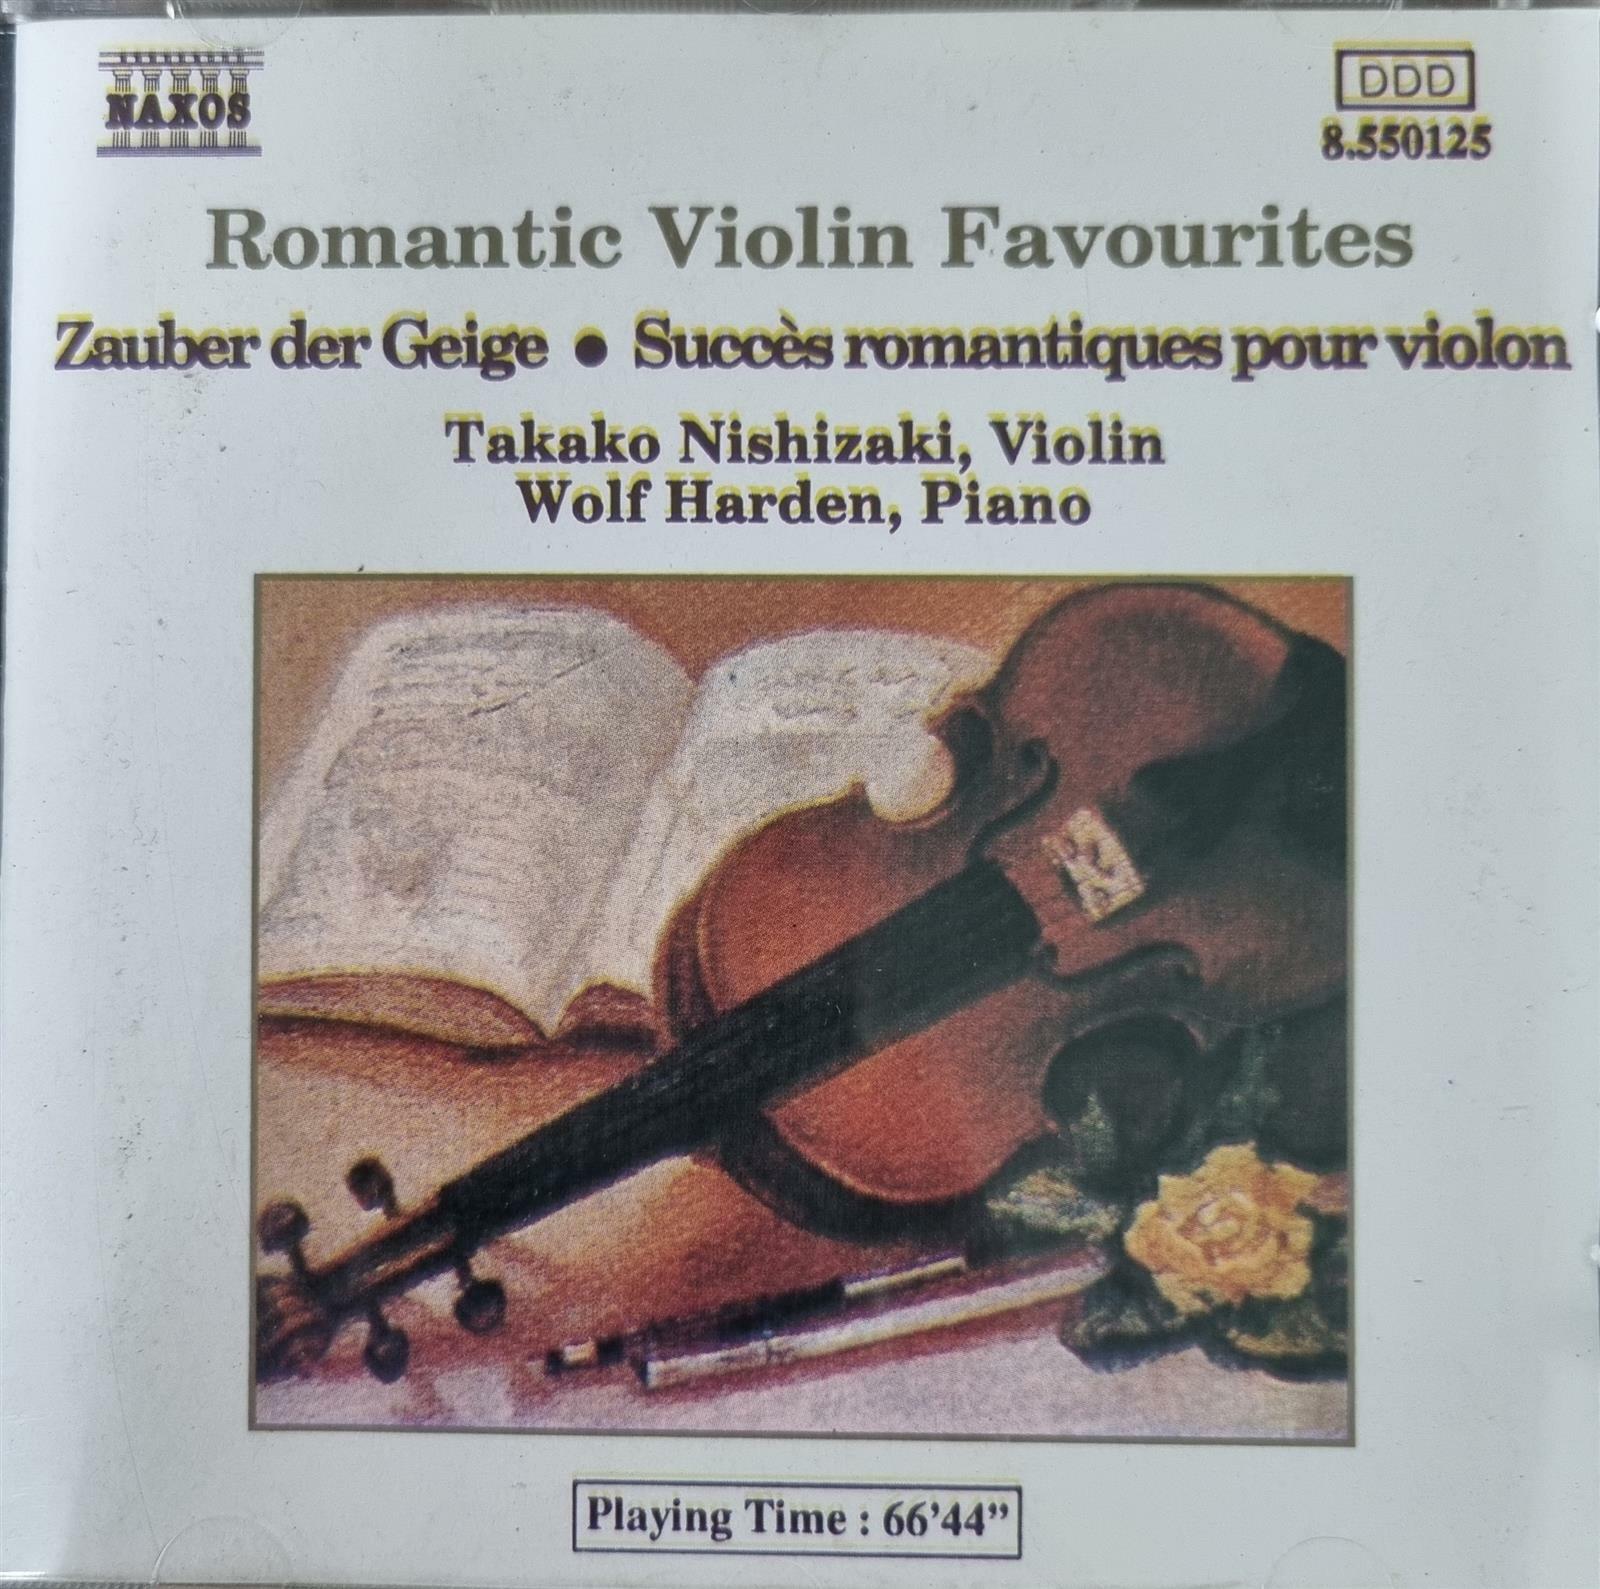 [중고] [CD 수입] Romantic Violin Favourites - Zauber der Geige, Succes romantiques pour viloin